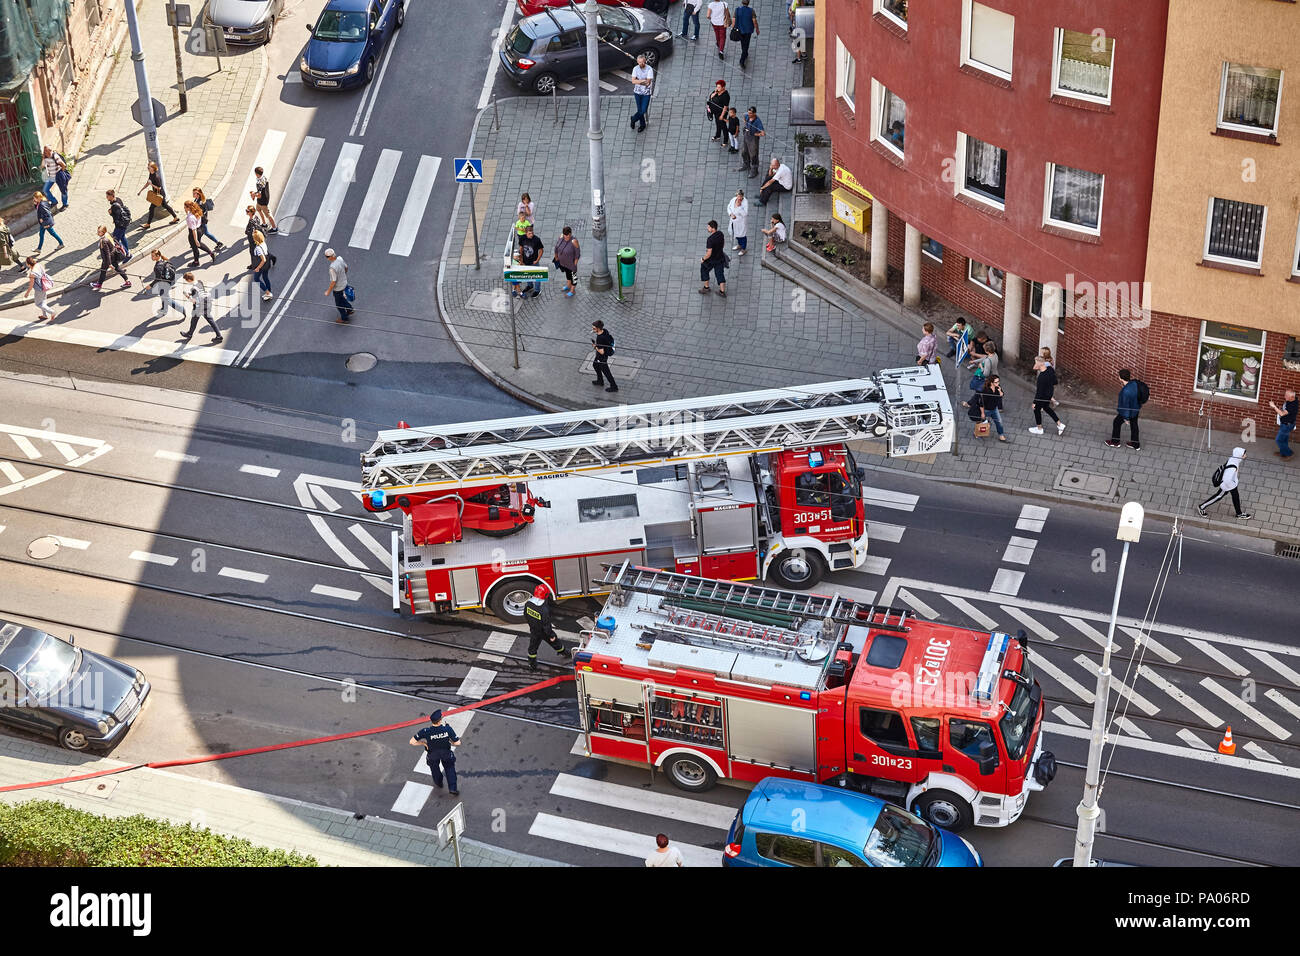 Stettin, Polen - 19 Juli 2018: Feuerwehr bereitet Wohnhaus Feuer an Niemierzynska Straße zu löschen. Stockfoto